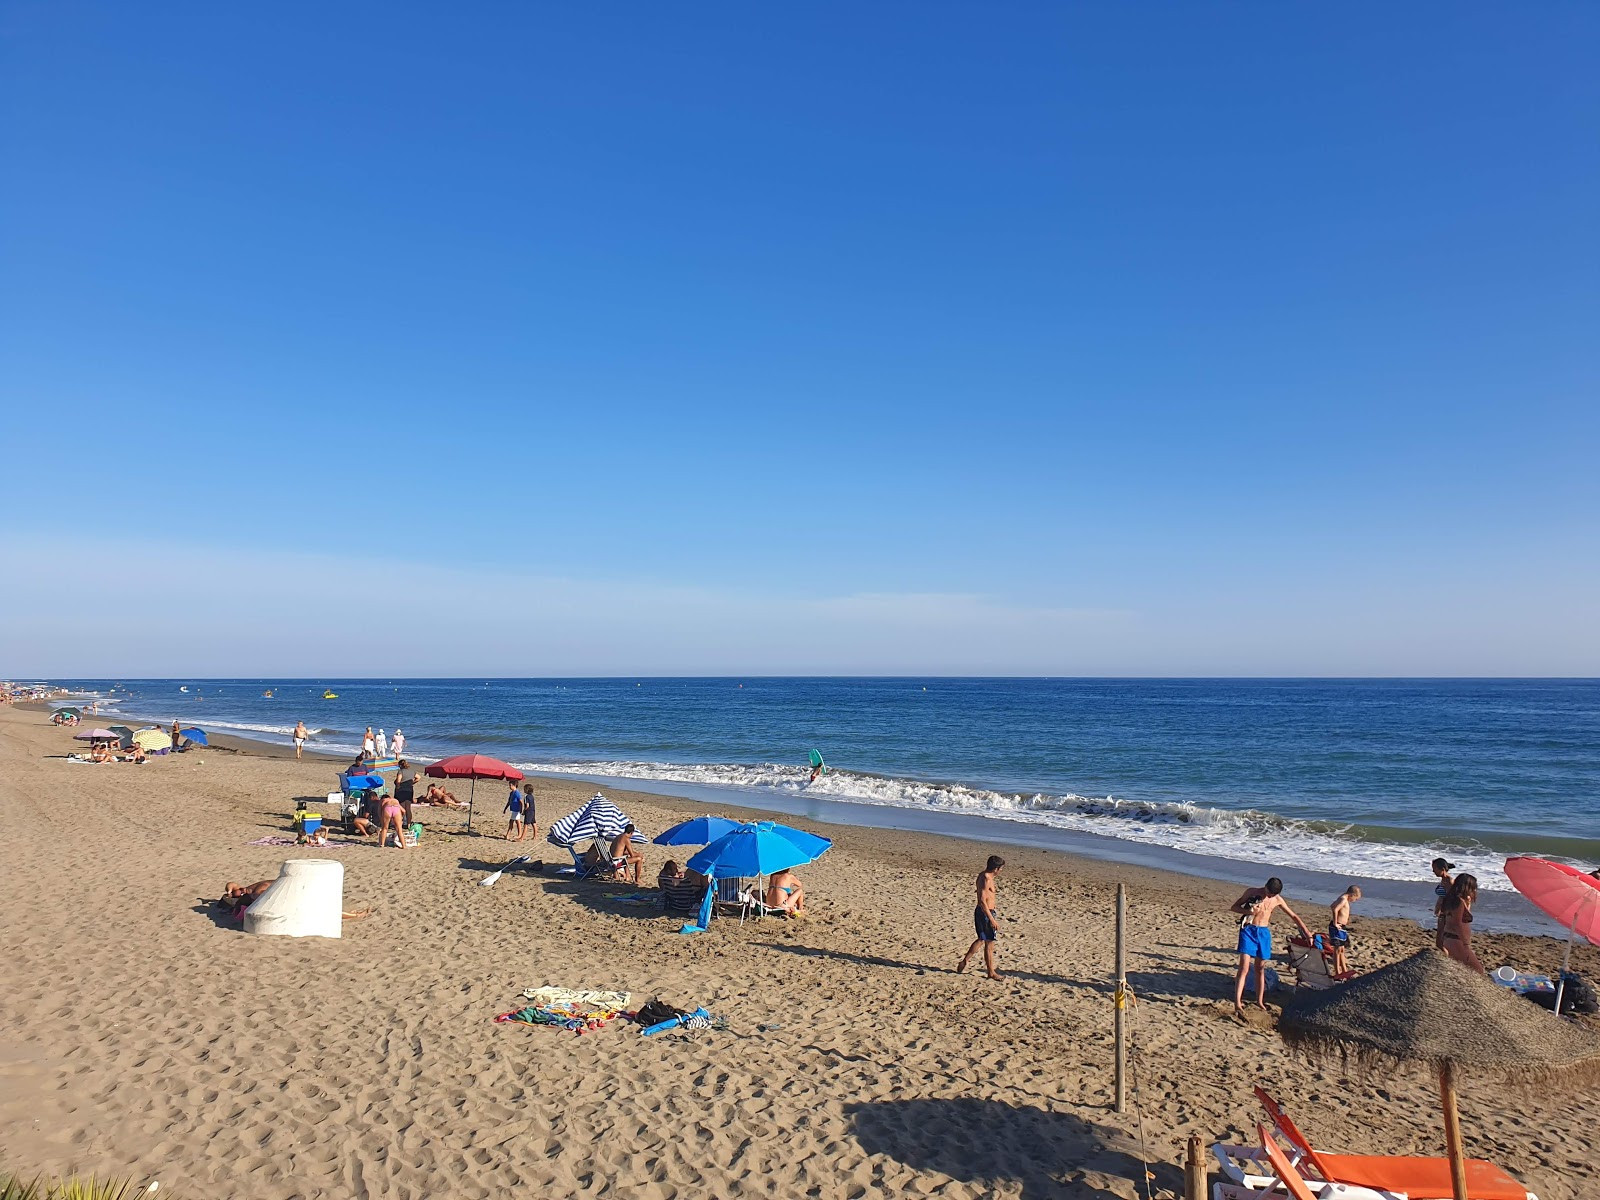 Playa De Zaragoza'in fotoğrafı geniş plaj ile birlikte